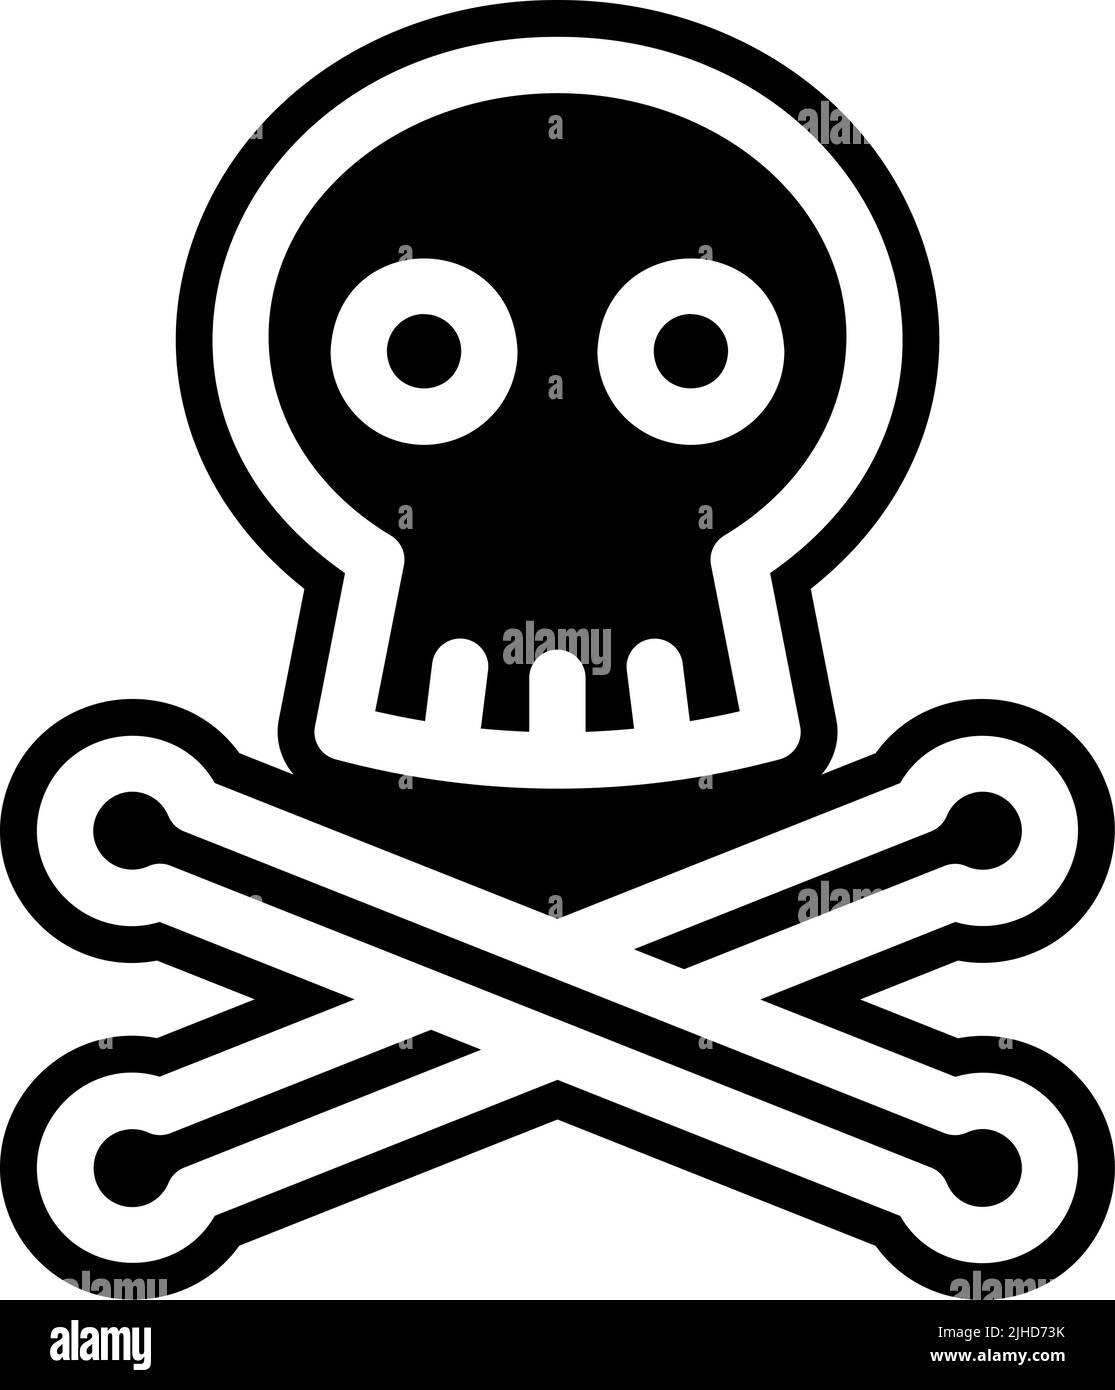 Skull and crossbones icon, Skull and crossbones symbol, danger